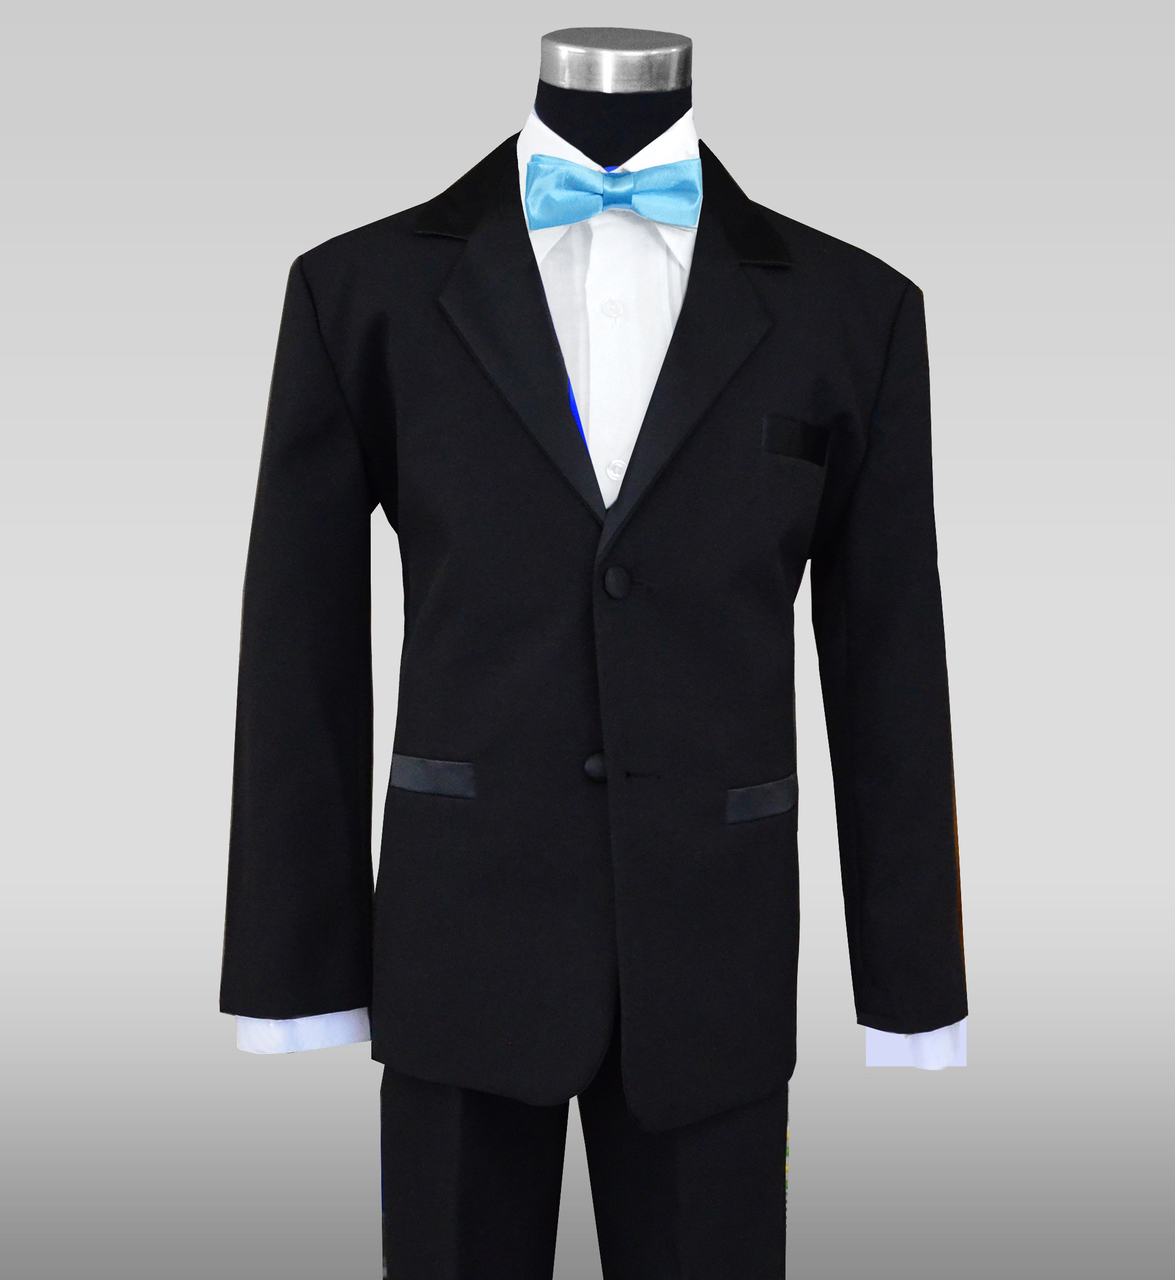 blue and black wedding tuxedo